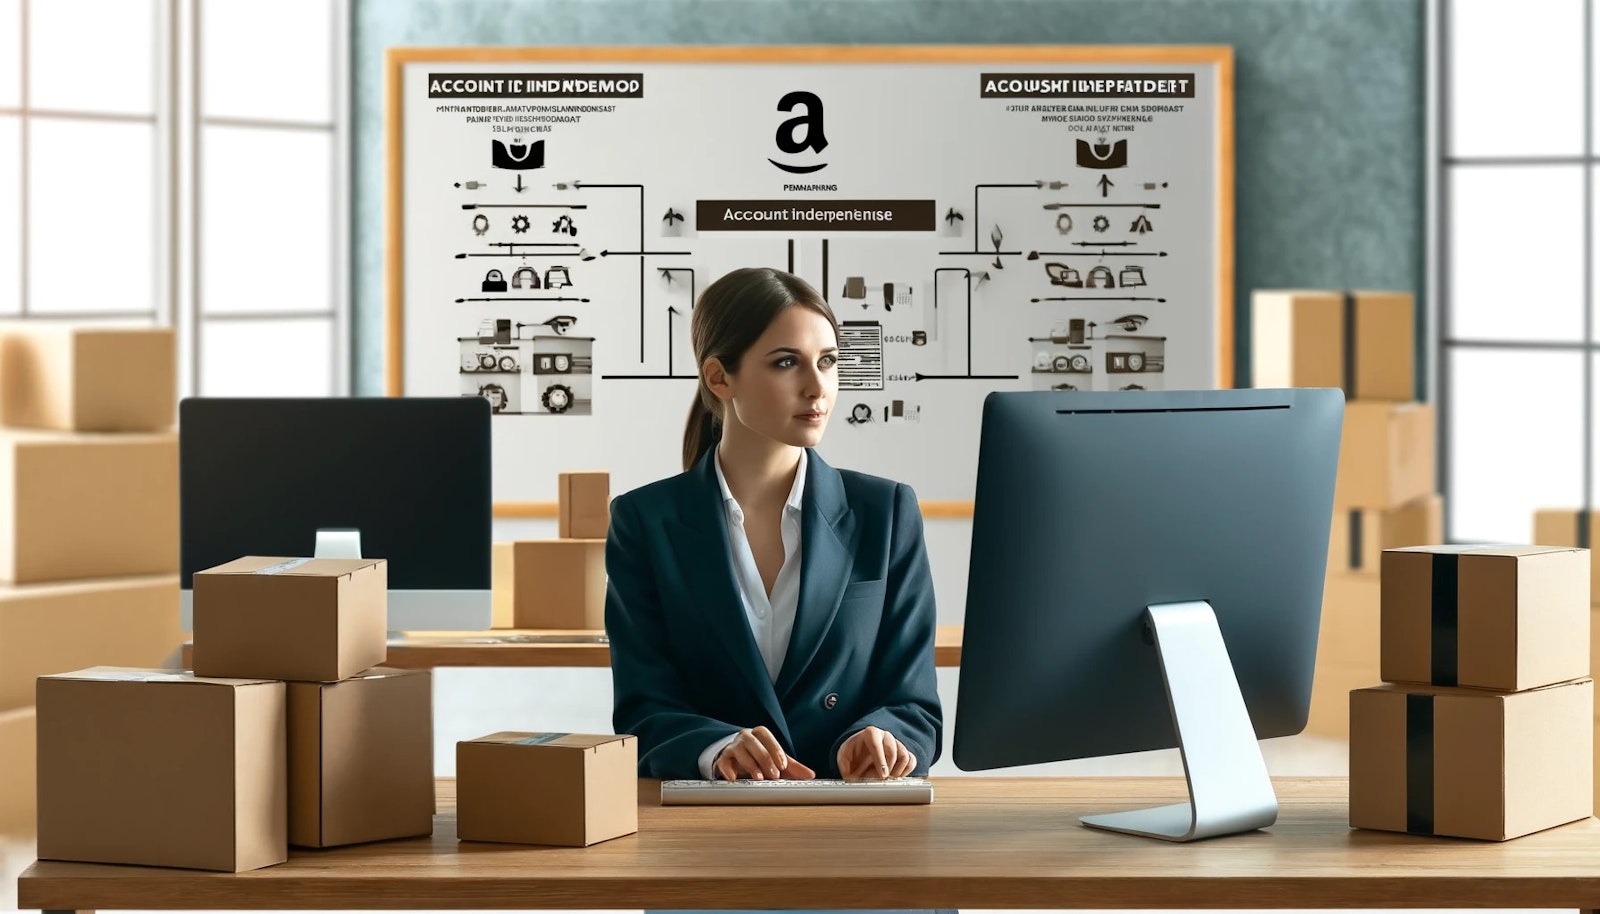 Graphique illustrant les meilleures pratiques pour des partenariats Amazon sans risque, avec des icônes de surveillance, formation, et gestion des stocks.